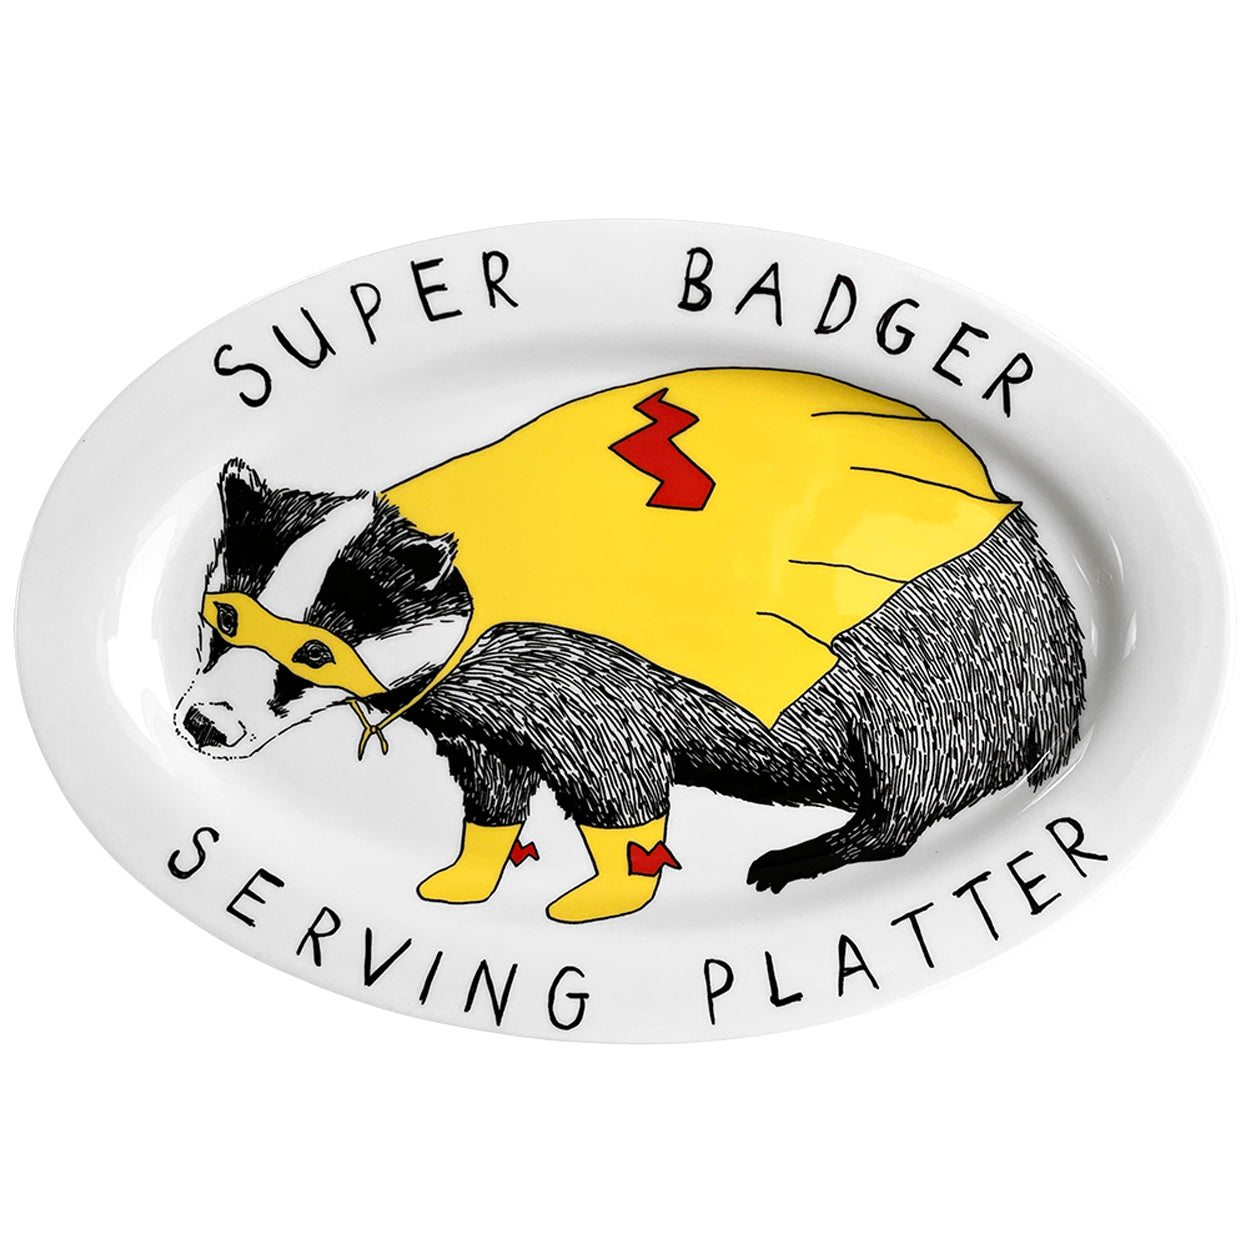 Super Badger Serving Platter